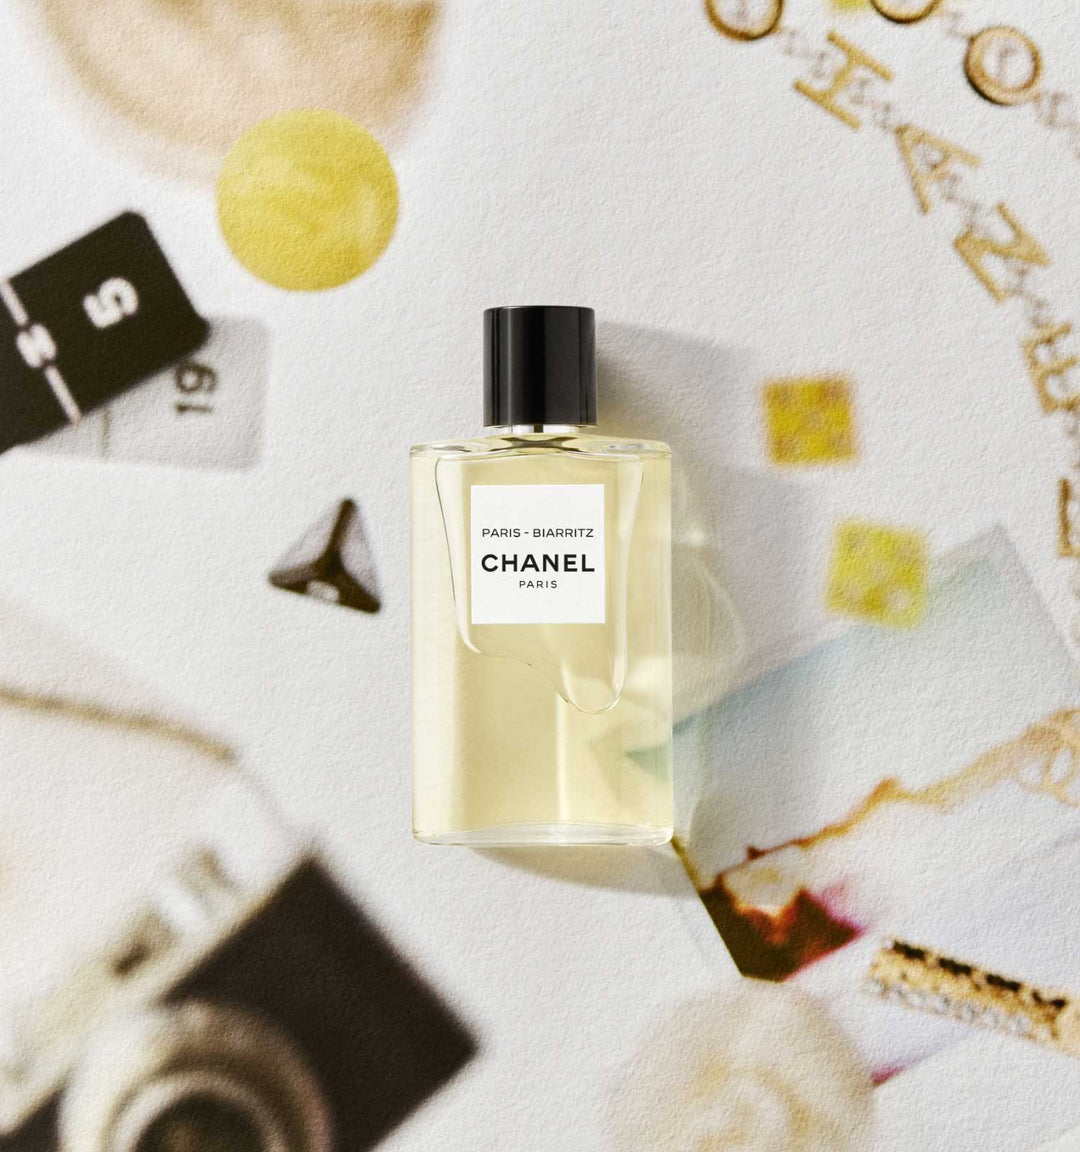 Nước Hoa CHANEL Paris - Biarritz Les Eaux De Chanel - Eau de Toilette Spray